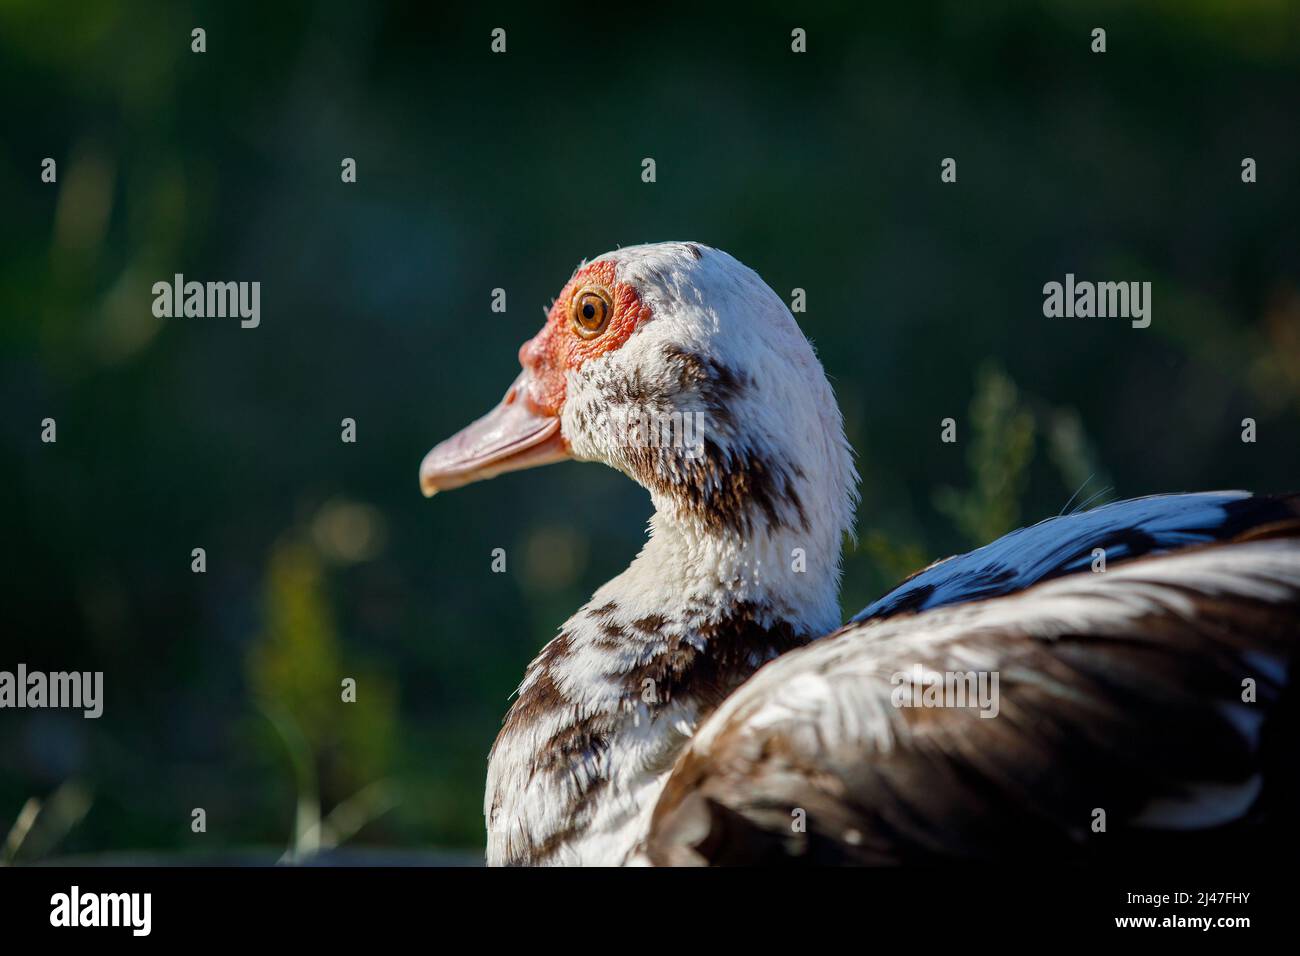 Portrait d'un canard musqué par l'arrière, sur fond vert foncé. Banque D'Images